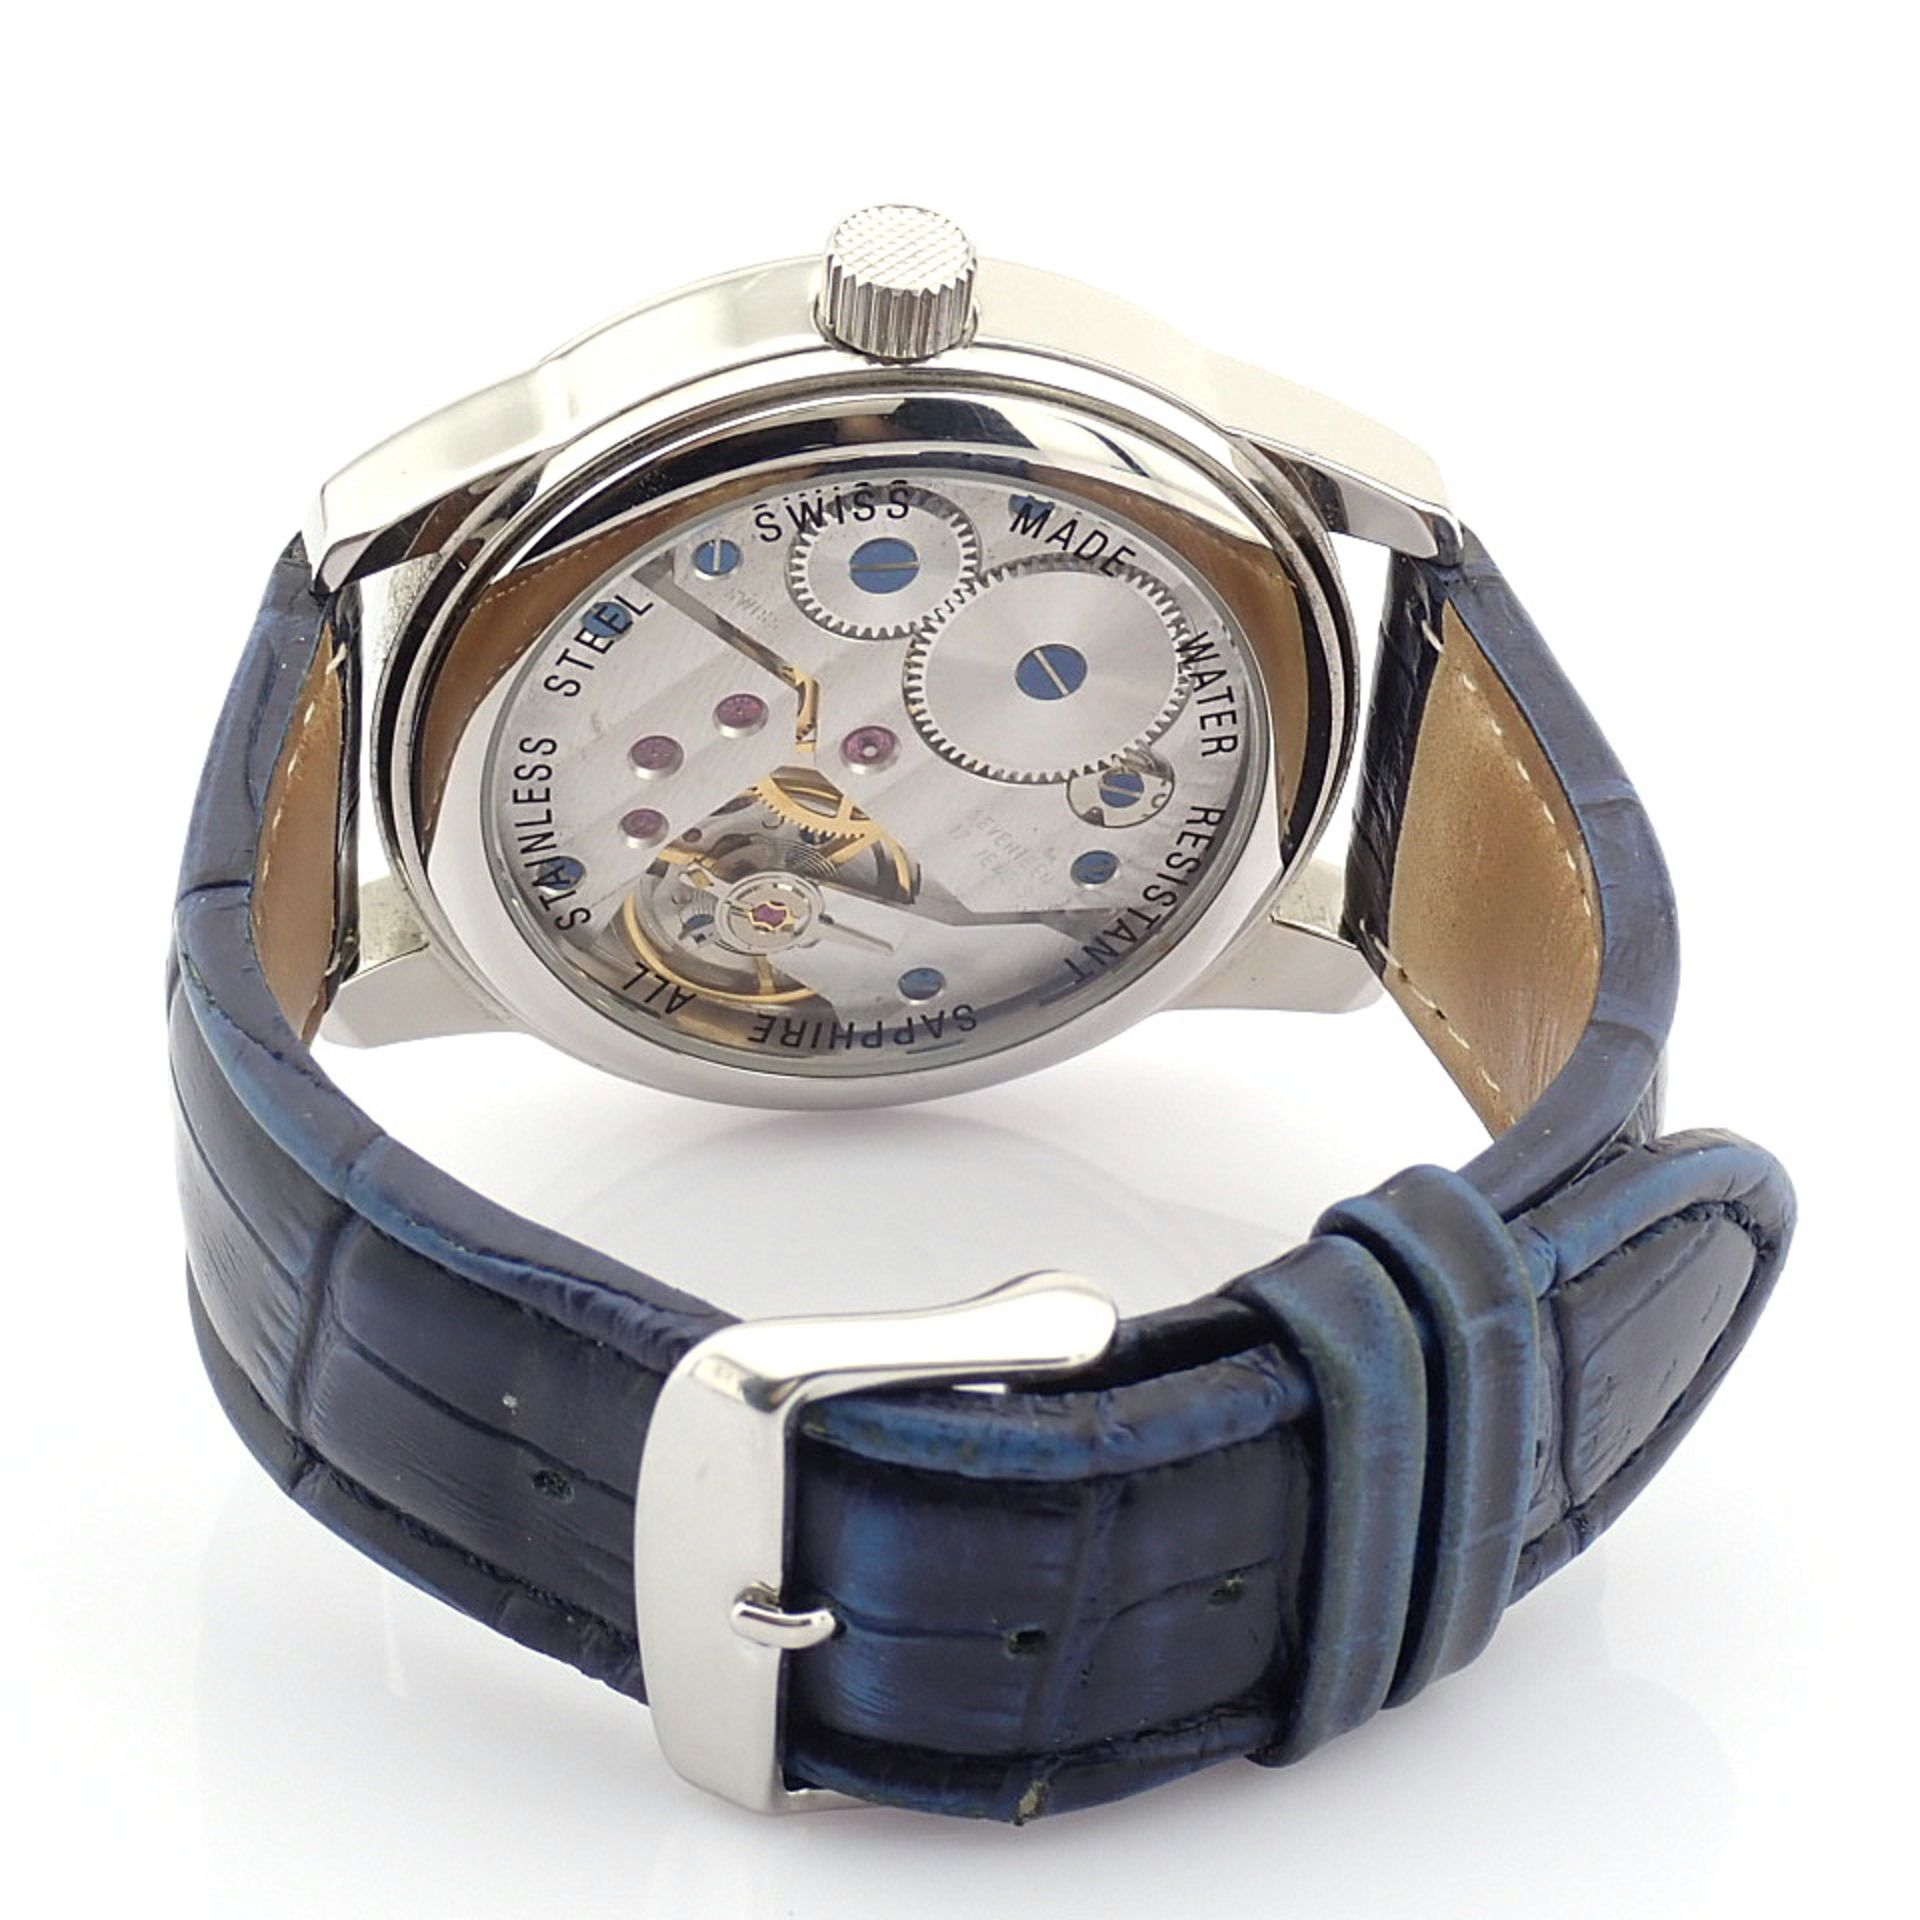 Claude Meylan / Vallee De Joux Moonphase - Gentlmen's Steel Wrist Watch - Image 4 of 11